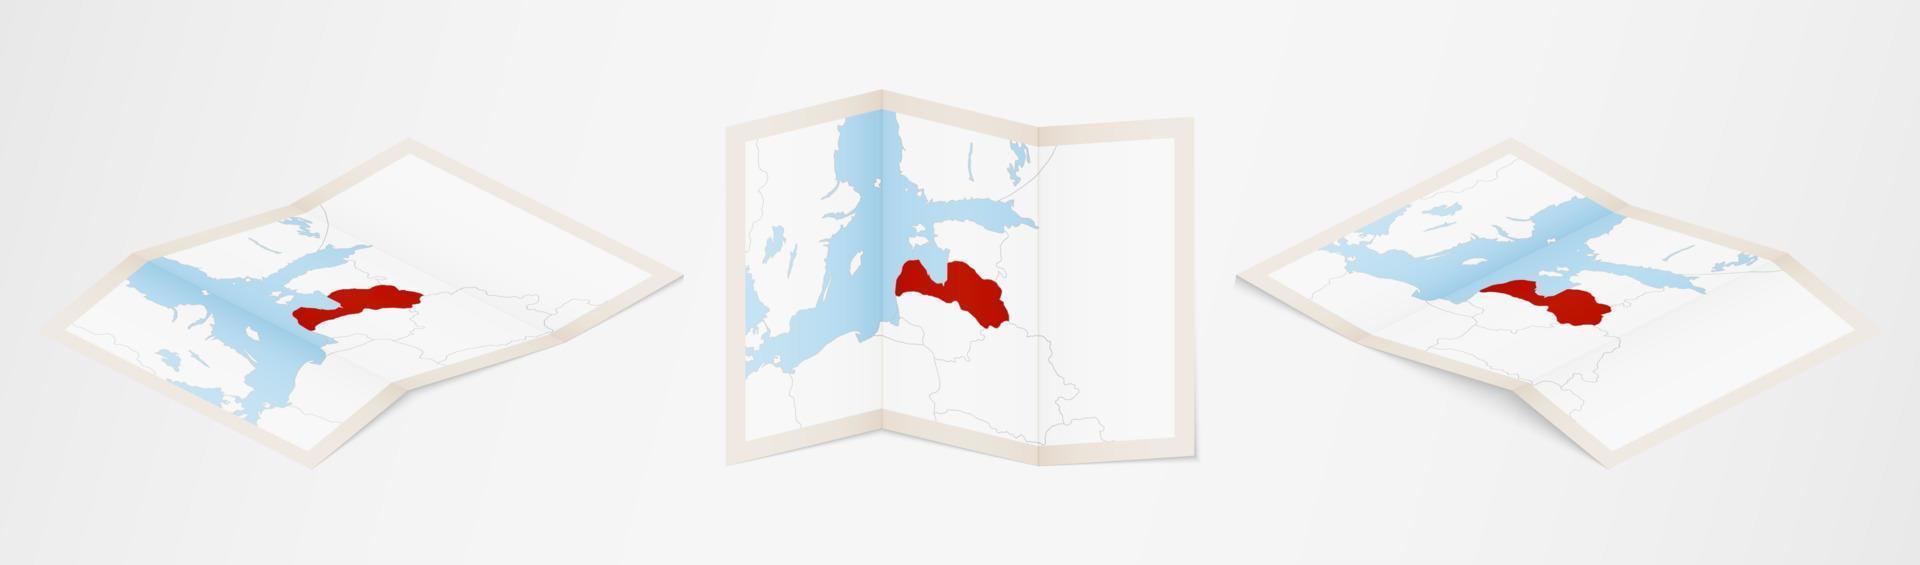 mapa dobrado da letônia em três versões diferentes. vetor